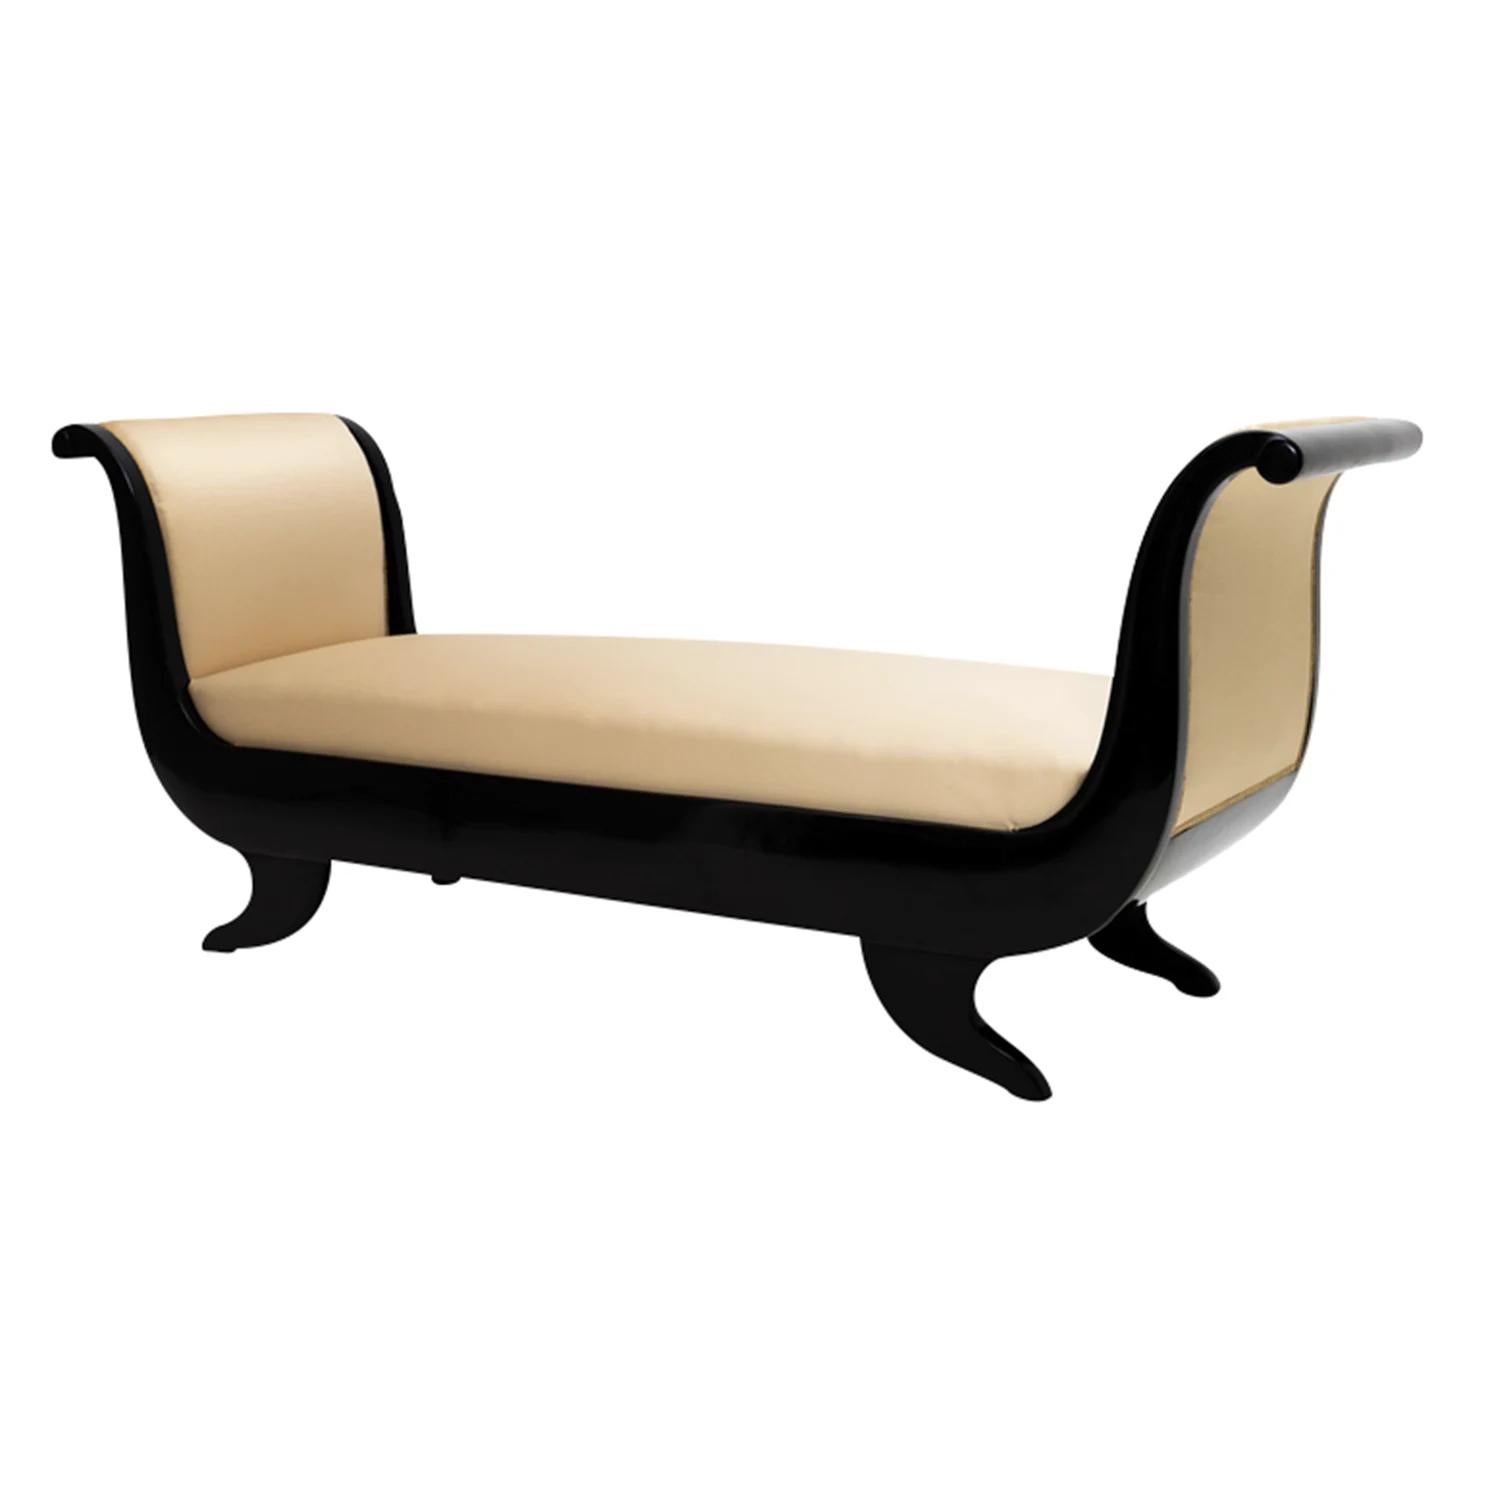 Eine schwarze, antike französische Sofabank-Recamier aus handgefertigtem ebonisiertem Mahagoni, in gutem Zustand. Das Canapé zeichnet sich durch zwei seitliche Rückenlehnen aus, die auf vier gebogenen Holzfüßen stehen. Das Sofa repräsentiert die